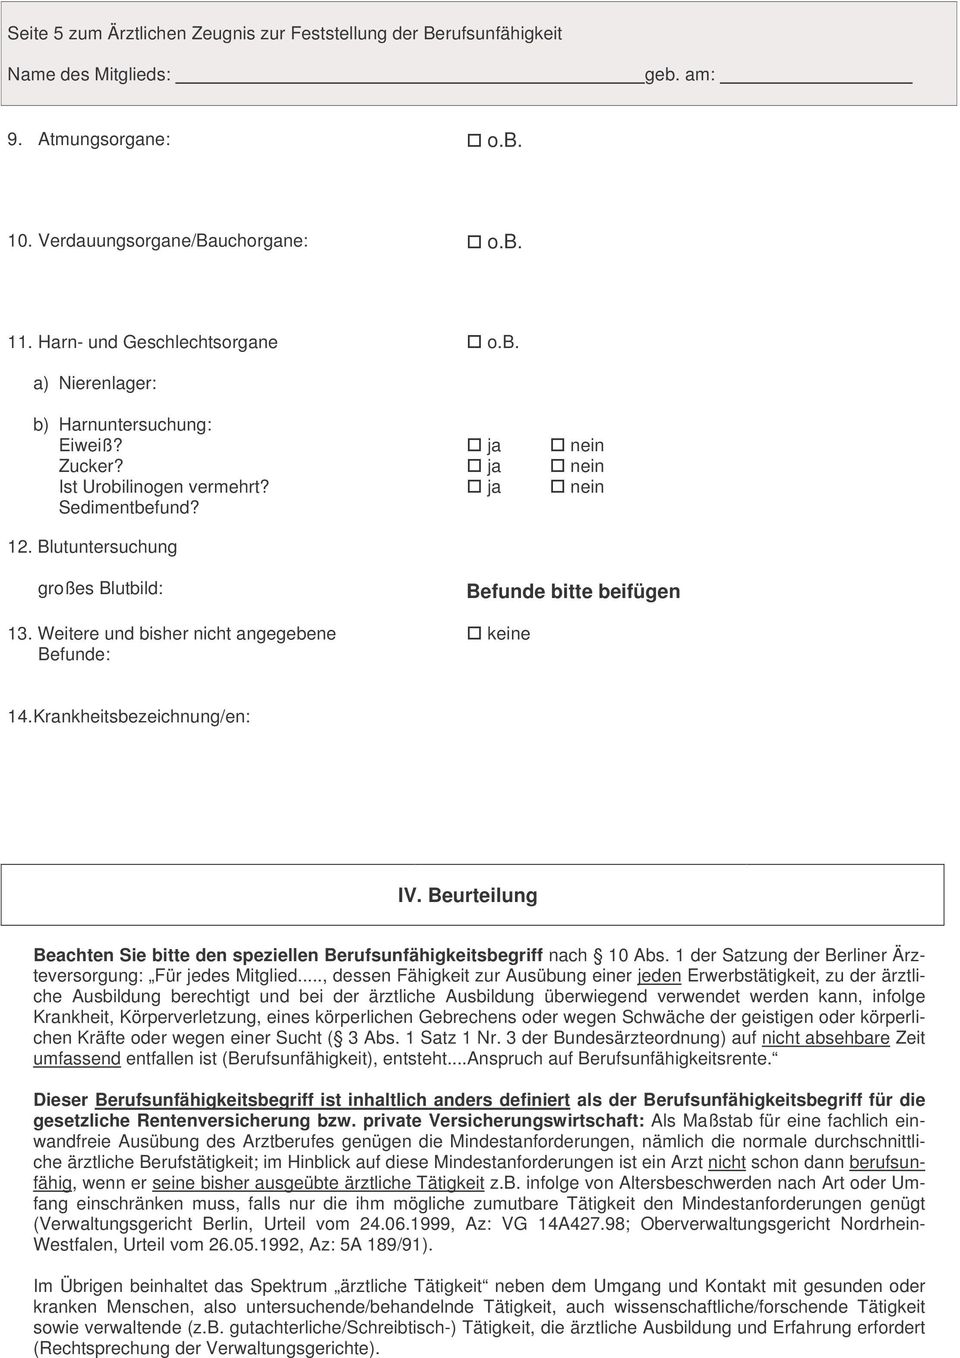 Beurteilung Beachten Sie bitte den speziellen Berufsunfähigkeitsbegriff nach 10 Abs. 1 der Satzung der Berliner Ärzteversorgung: Für jedes Mitglied.